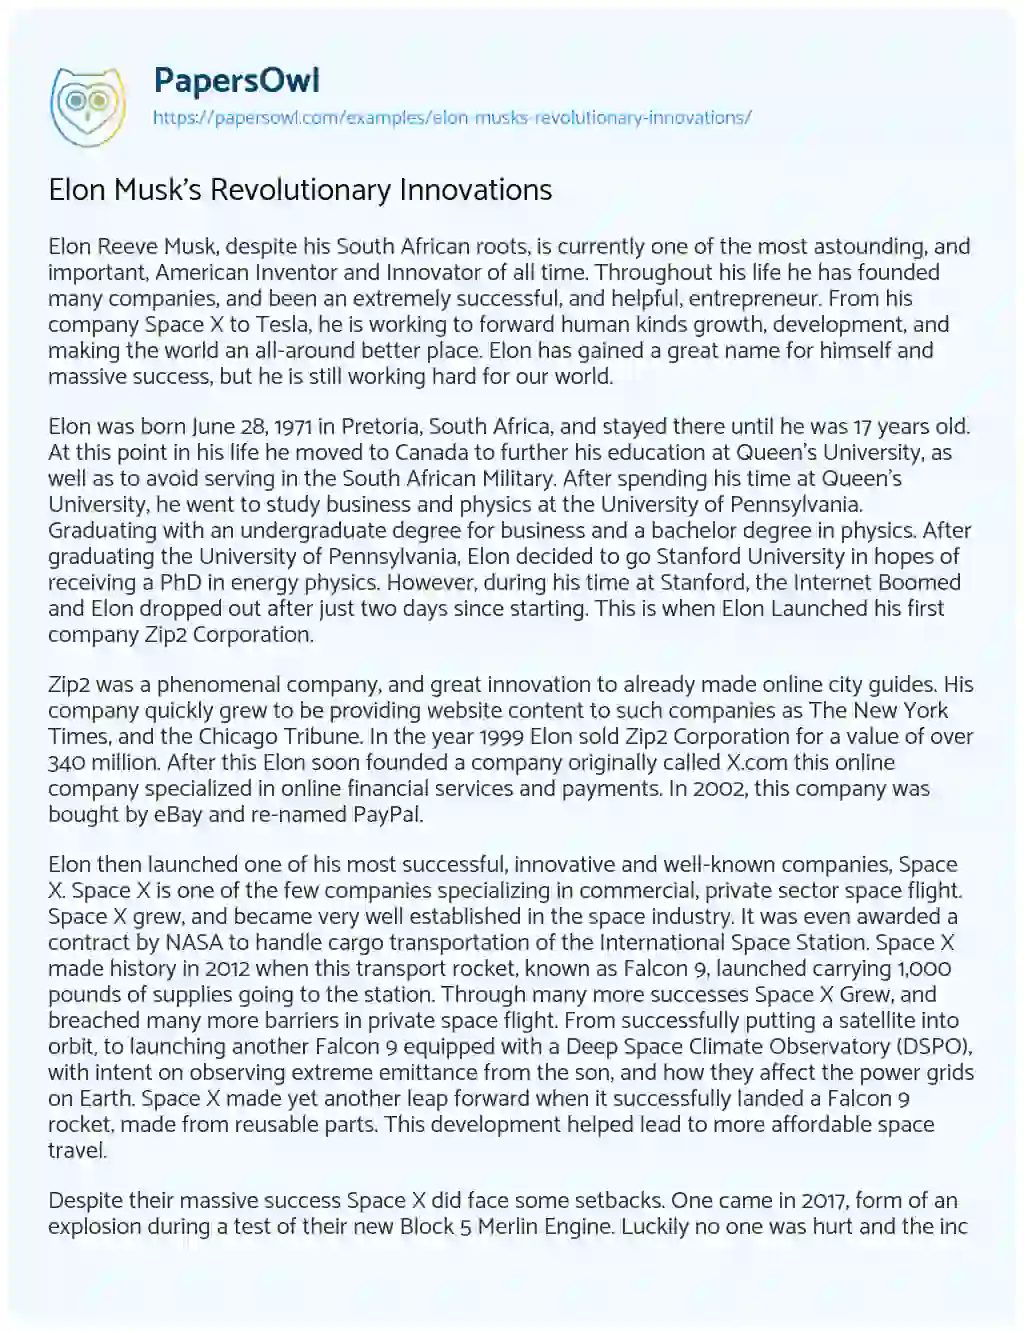 Elon Musk’s Revolutionary Innovations essay